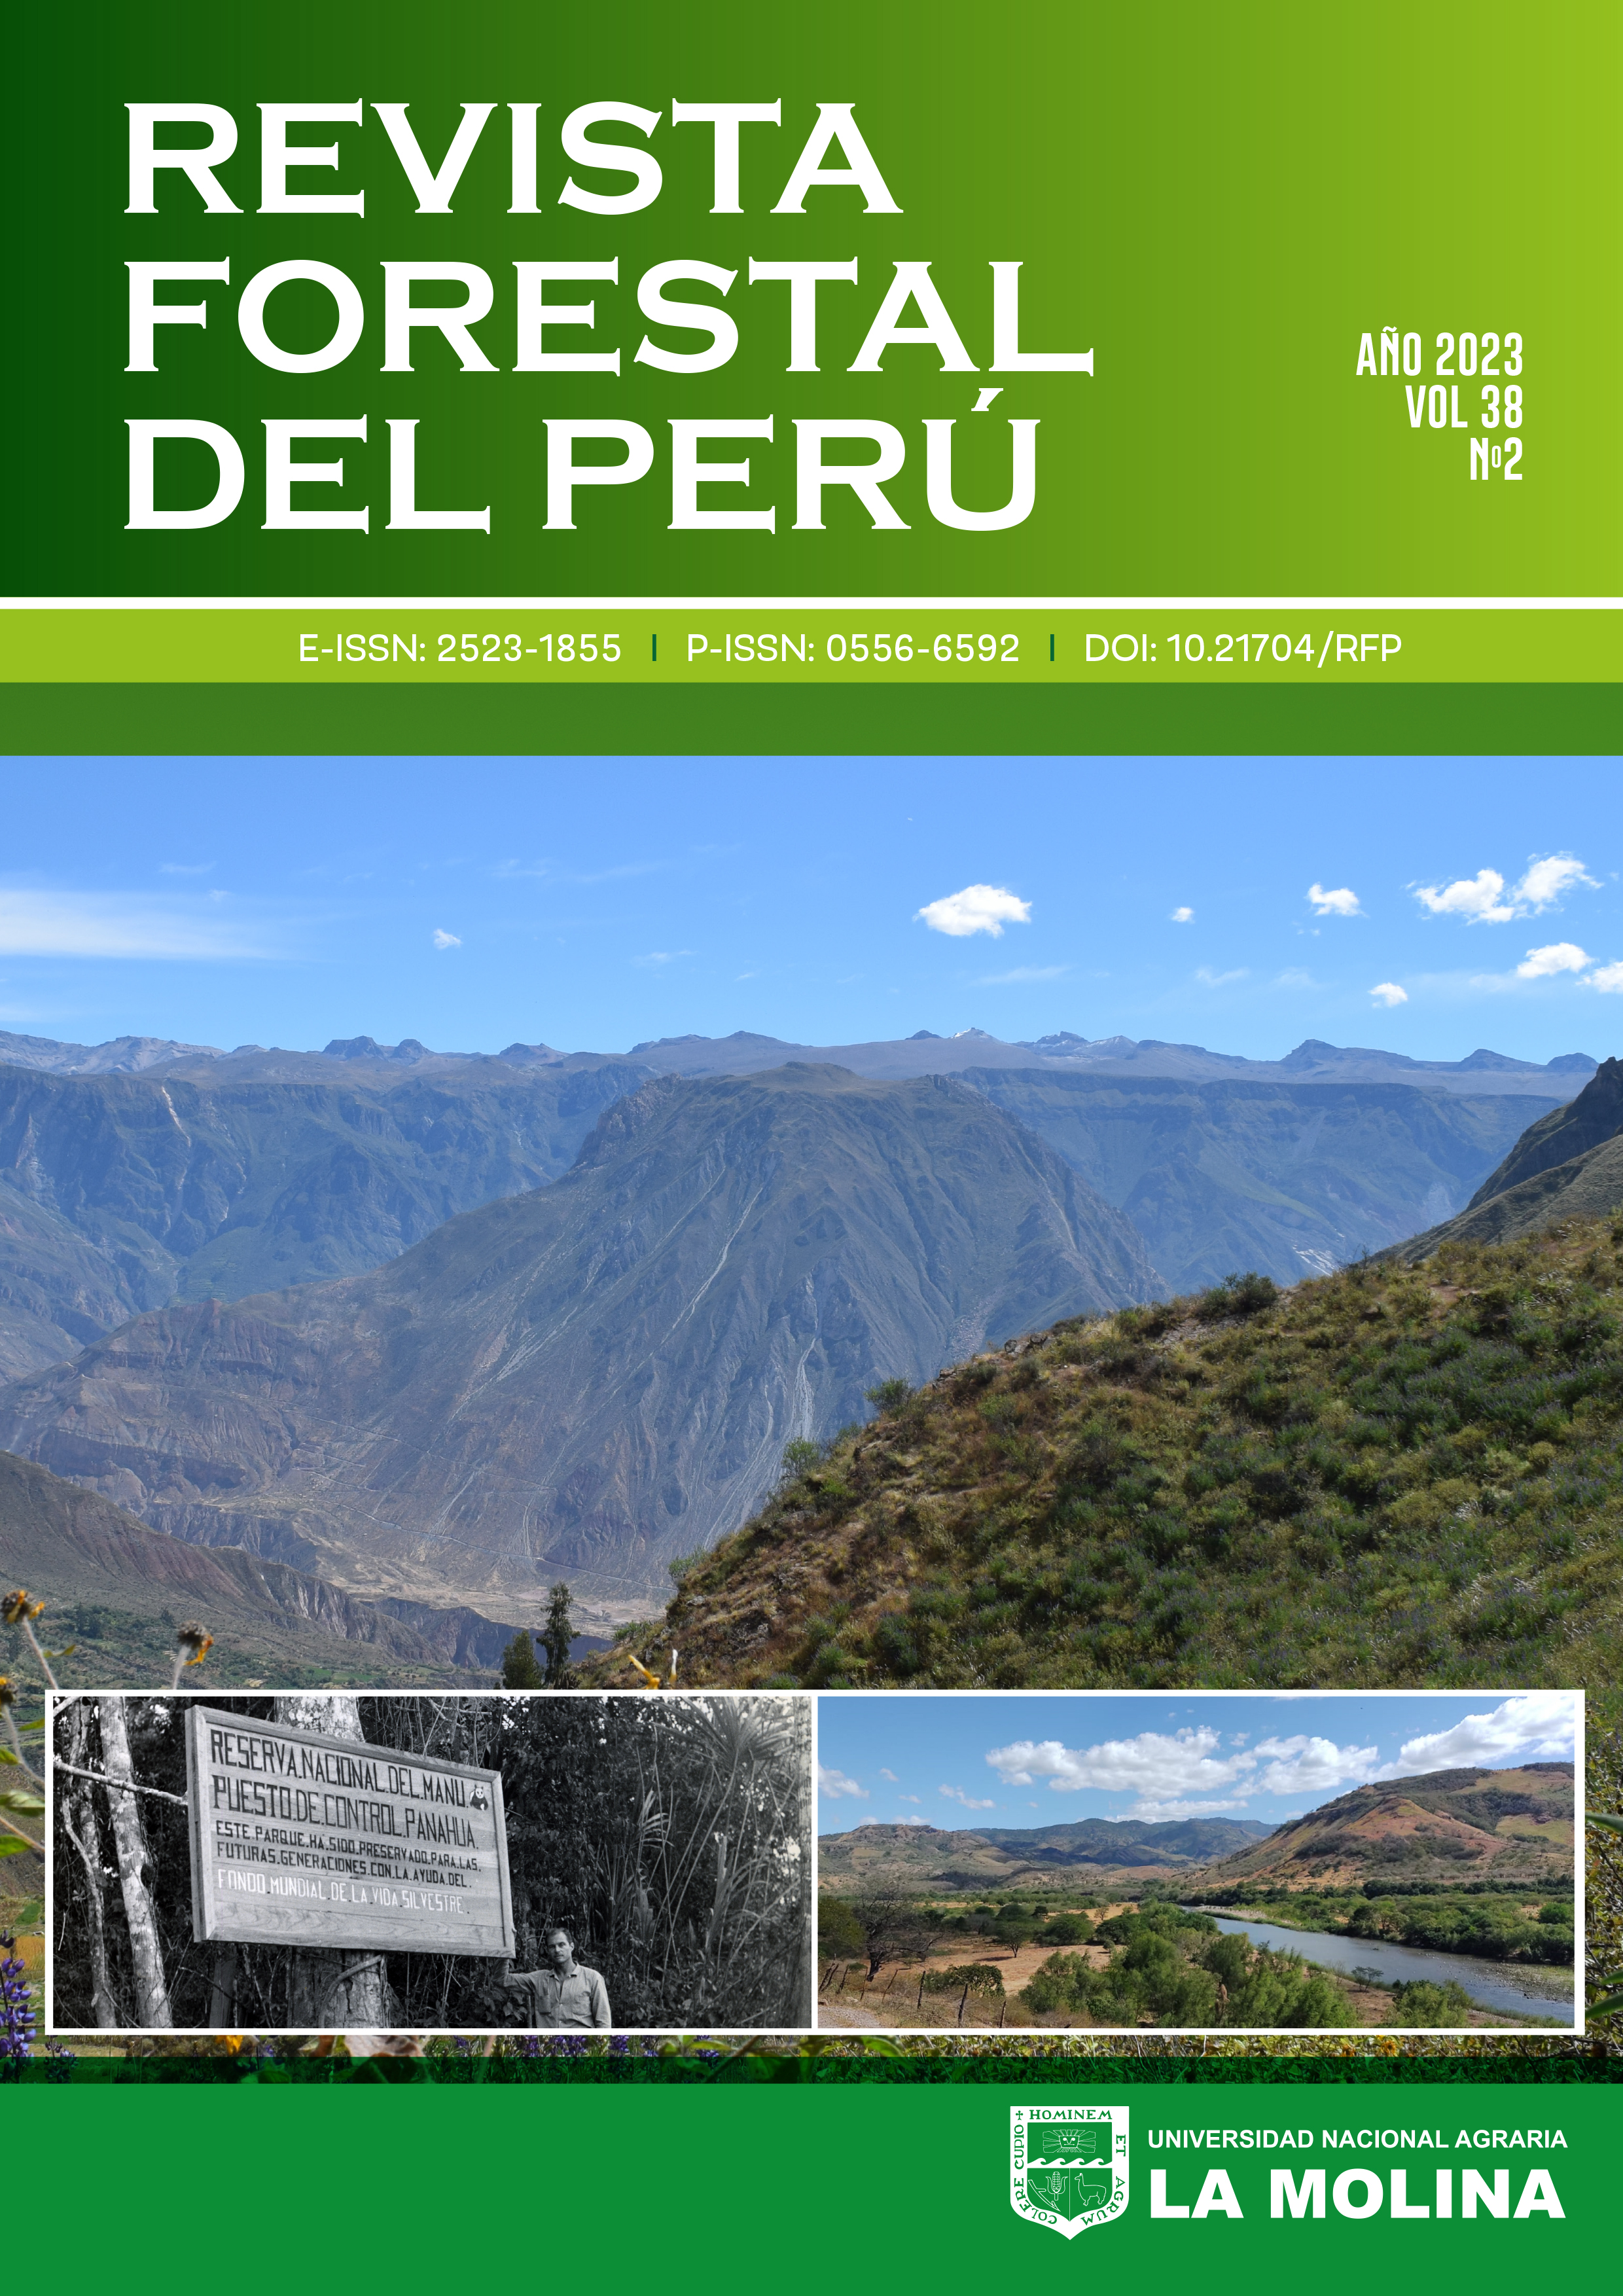 Revista Forestal del perú